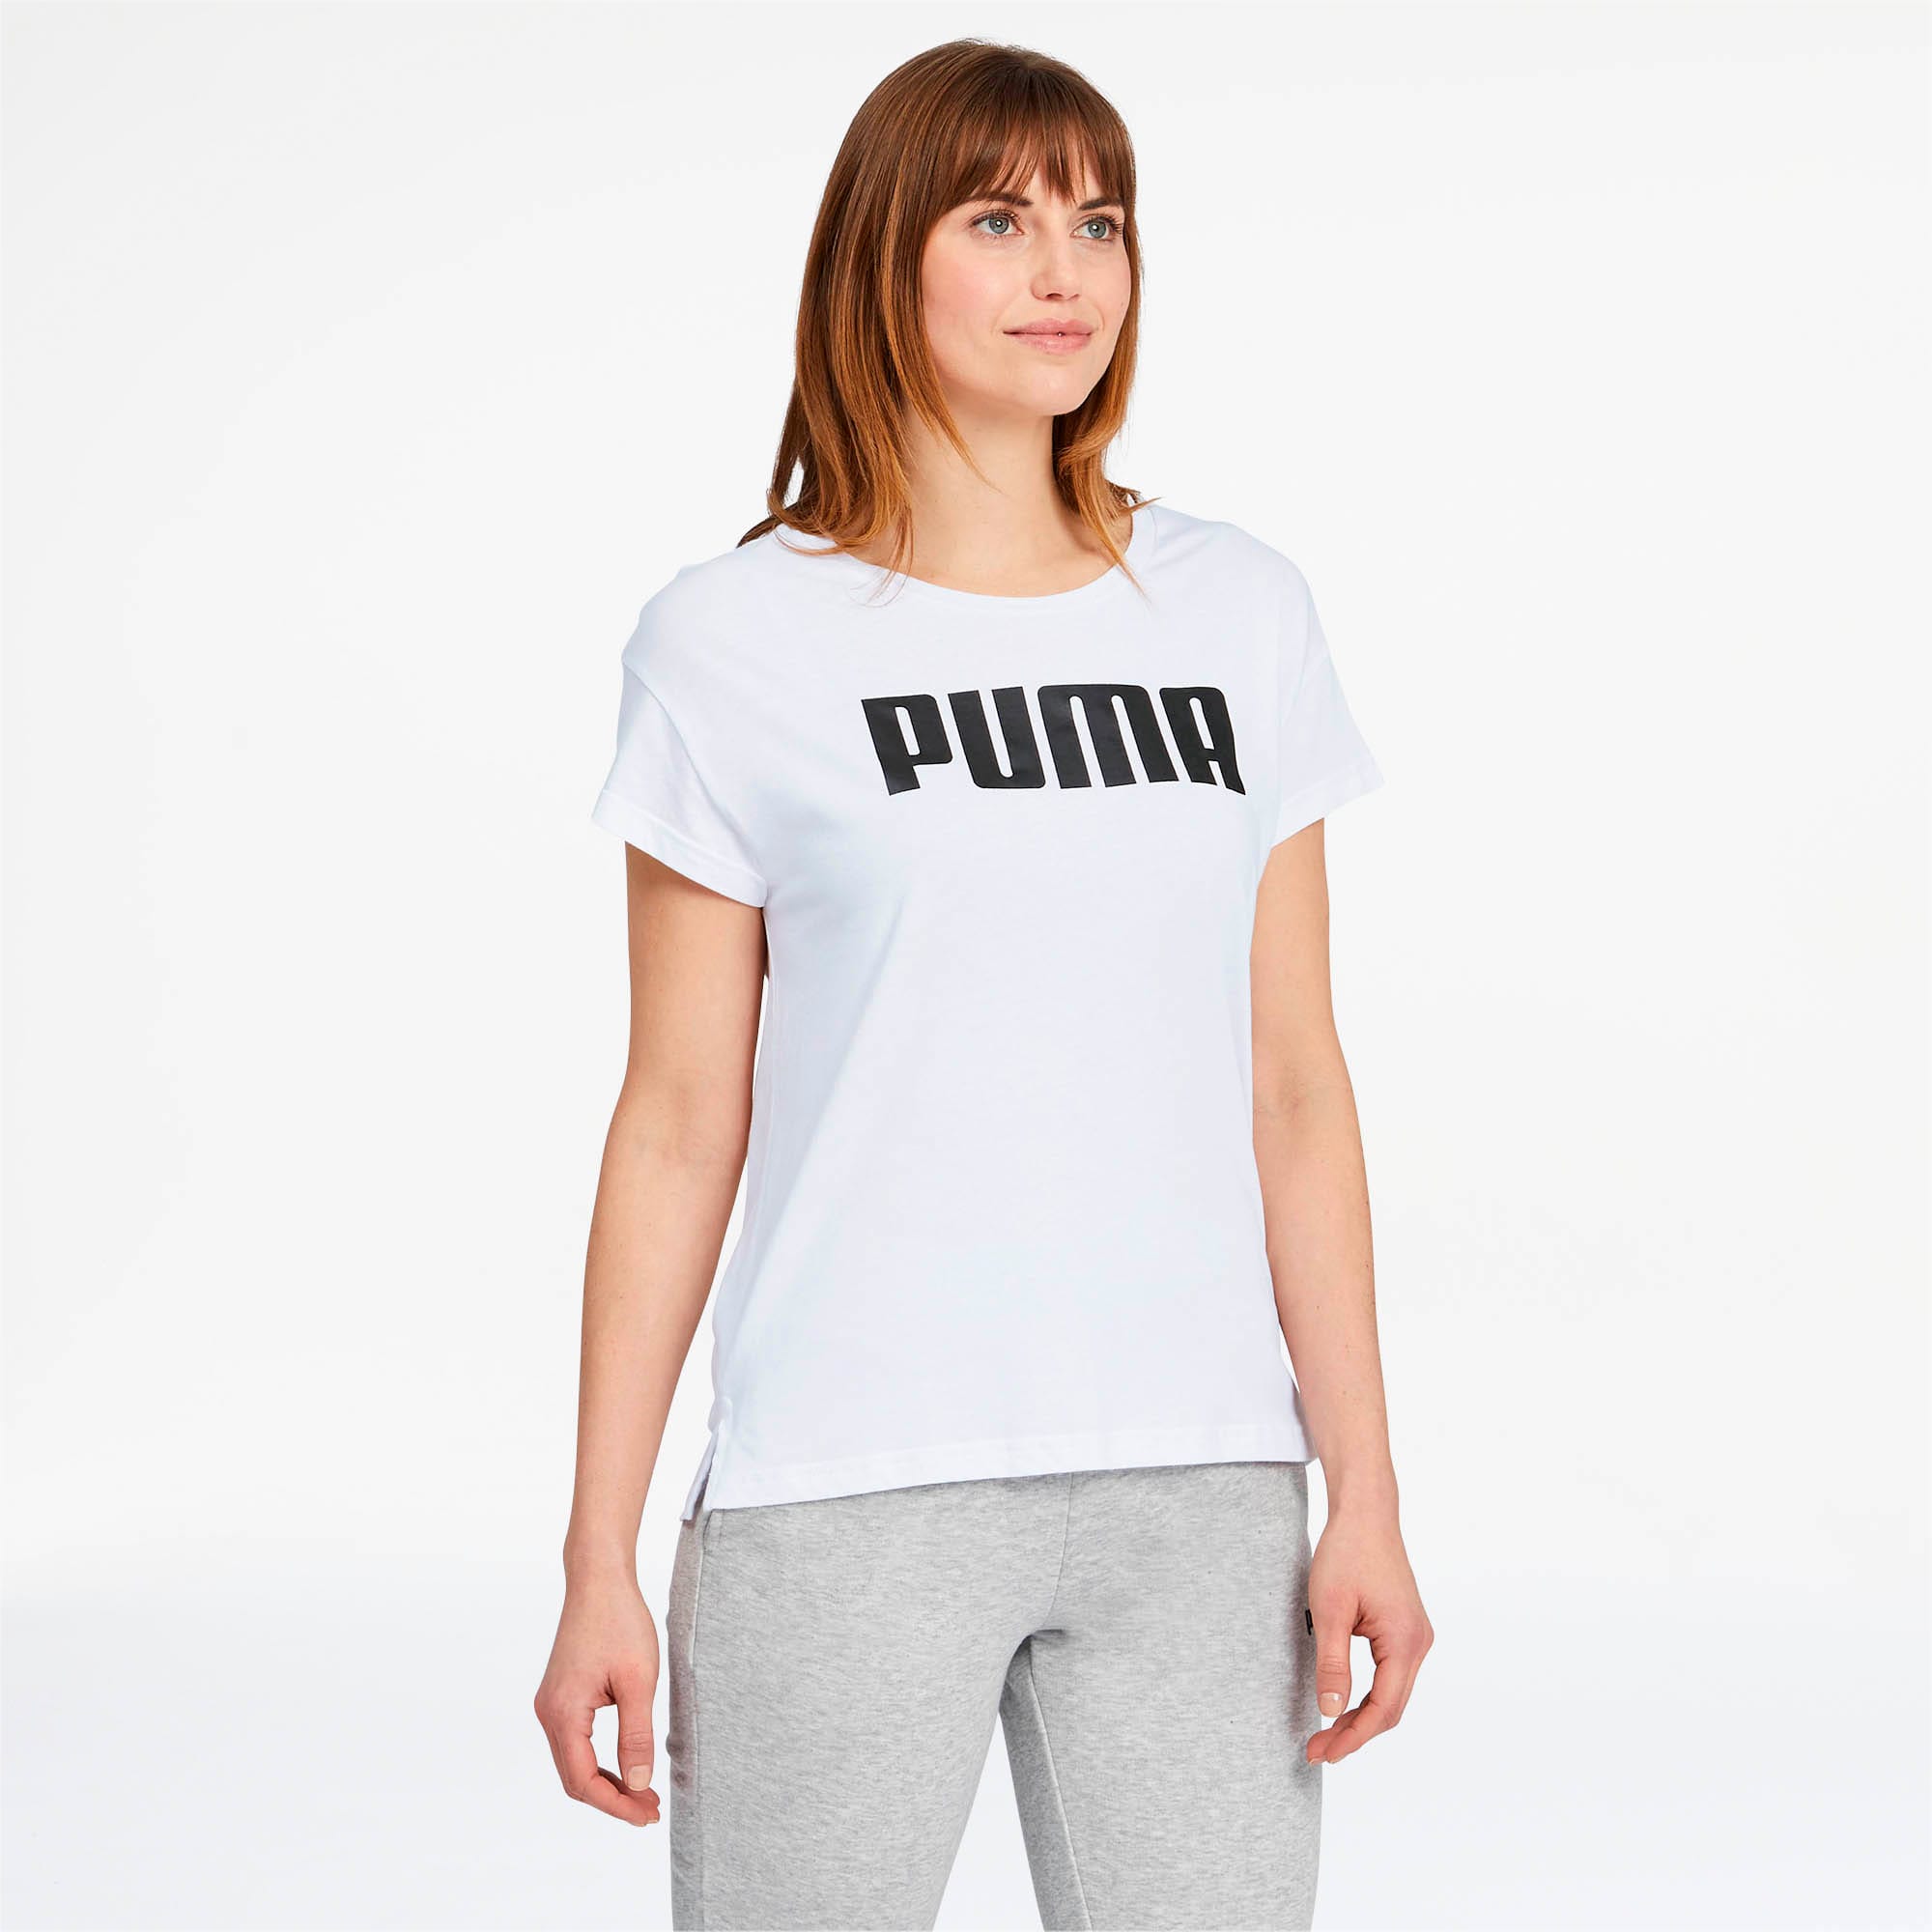 puma t shirts for ladies